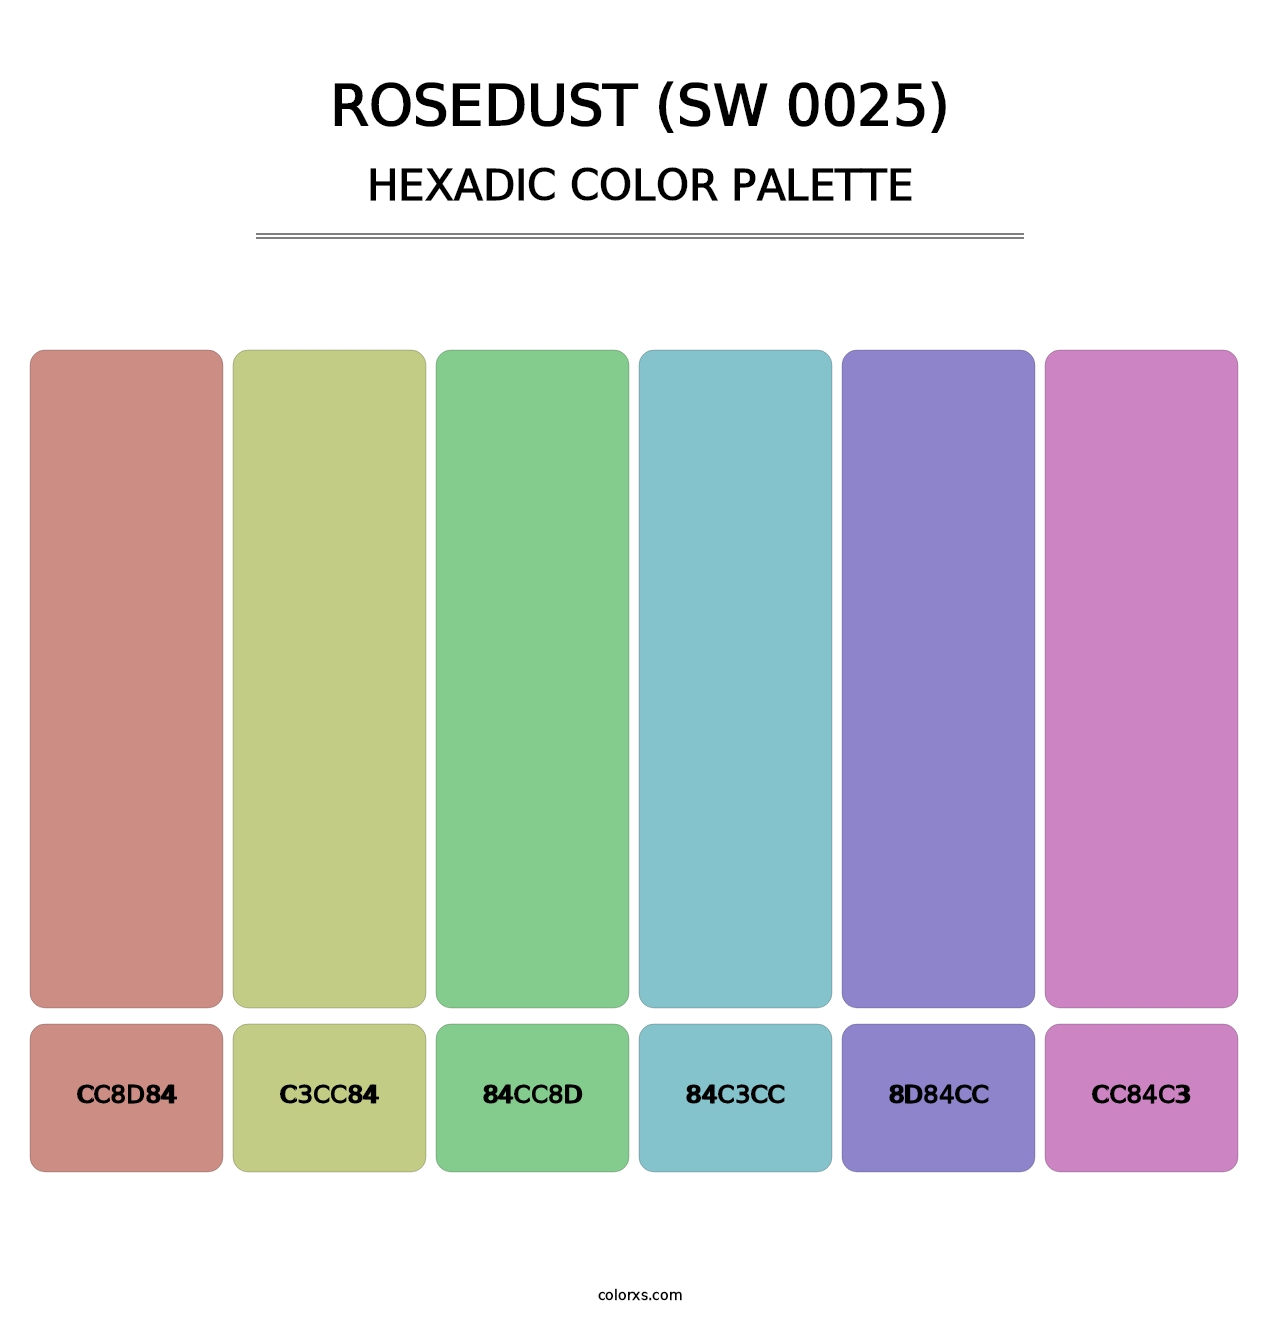 Rosedust (SW 0025) - Hexadic Color Palette